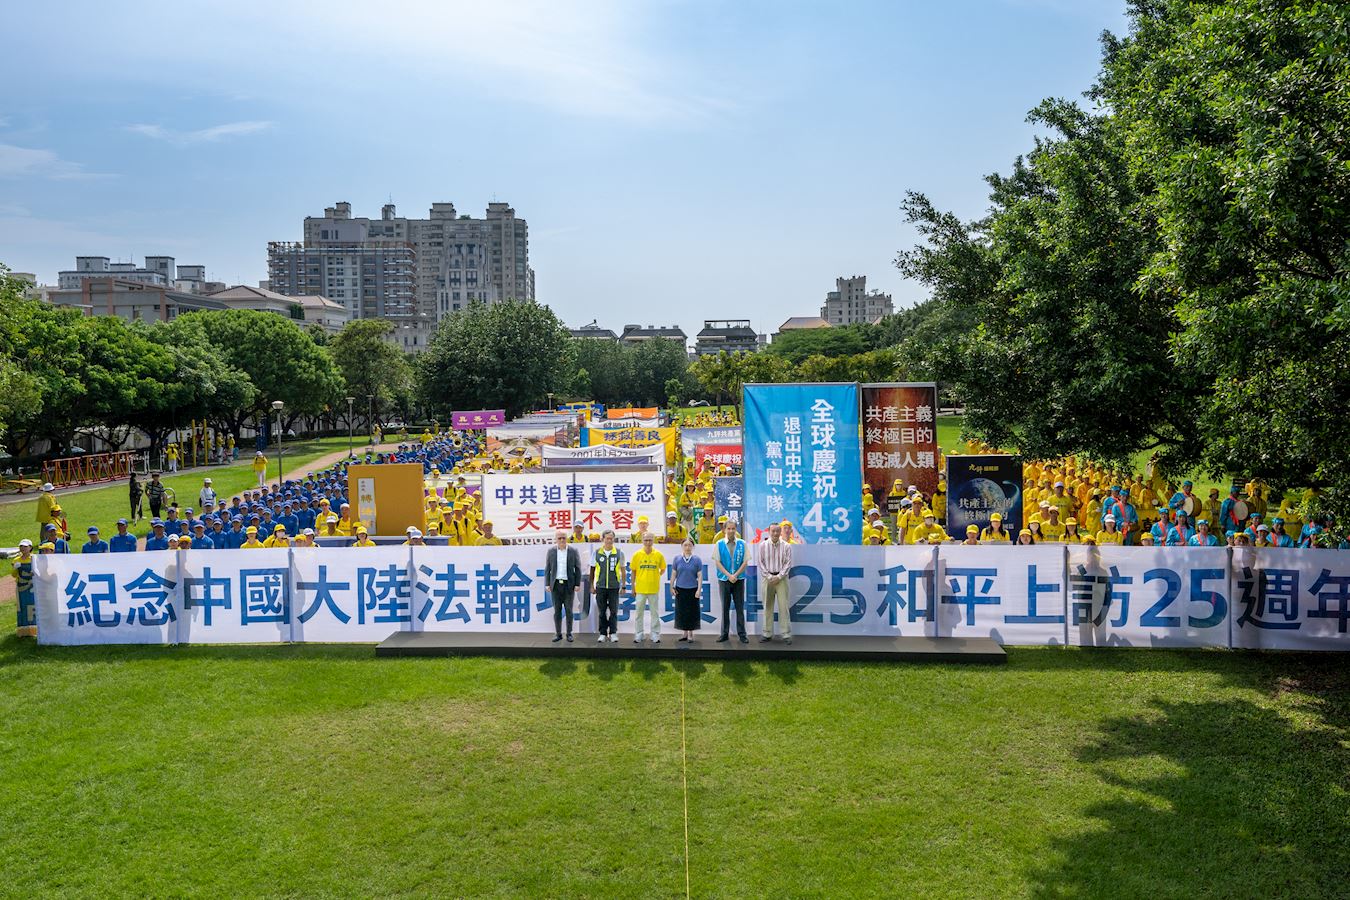 Image for article Taichung, Taiwan: Hodnostáři chválí Falun Gong během akcí k připomenutí pokojného apelu před 25 lety.